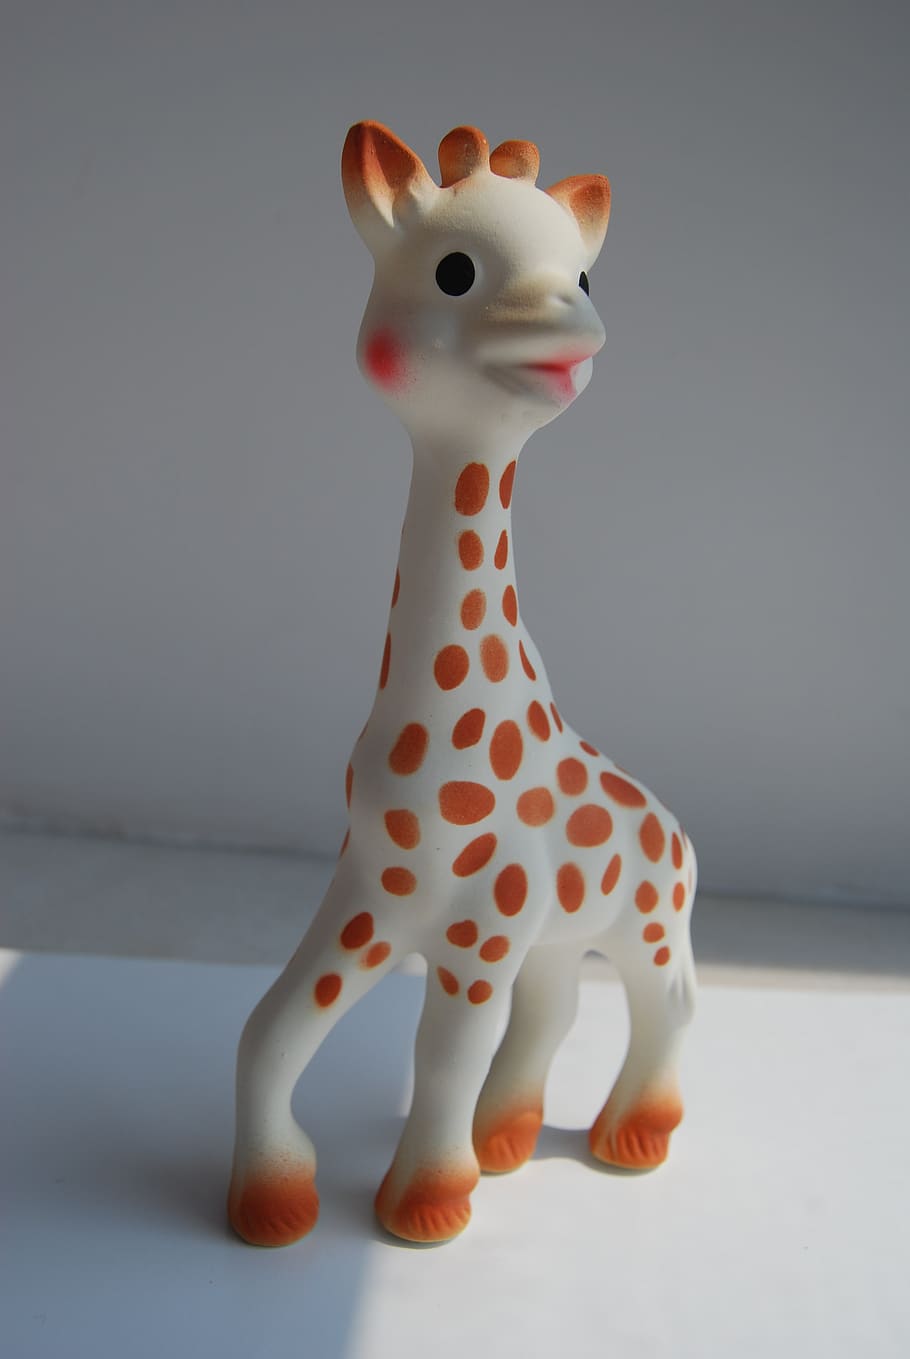 Sophie, jirafas, juguetes, mordedores, productos para bebés, sin personas, representación de animales, representación, arte y artesanía, interiores